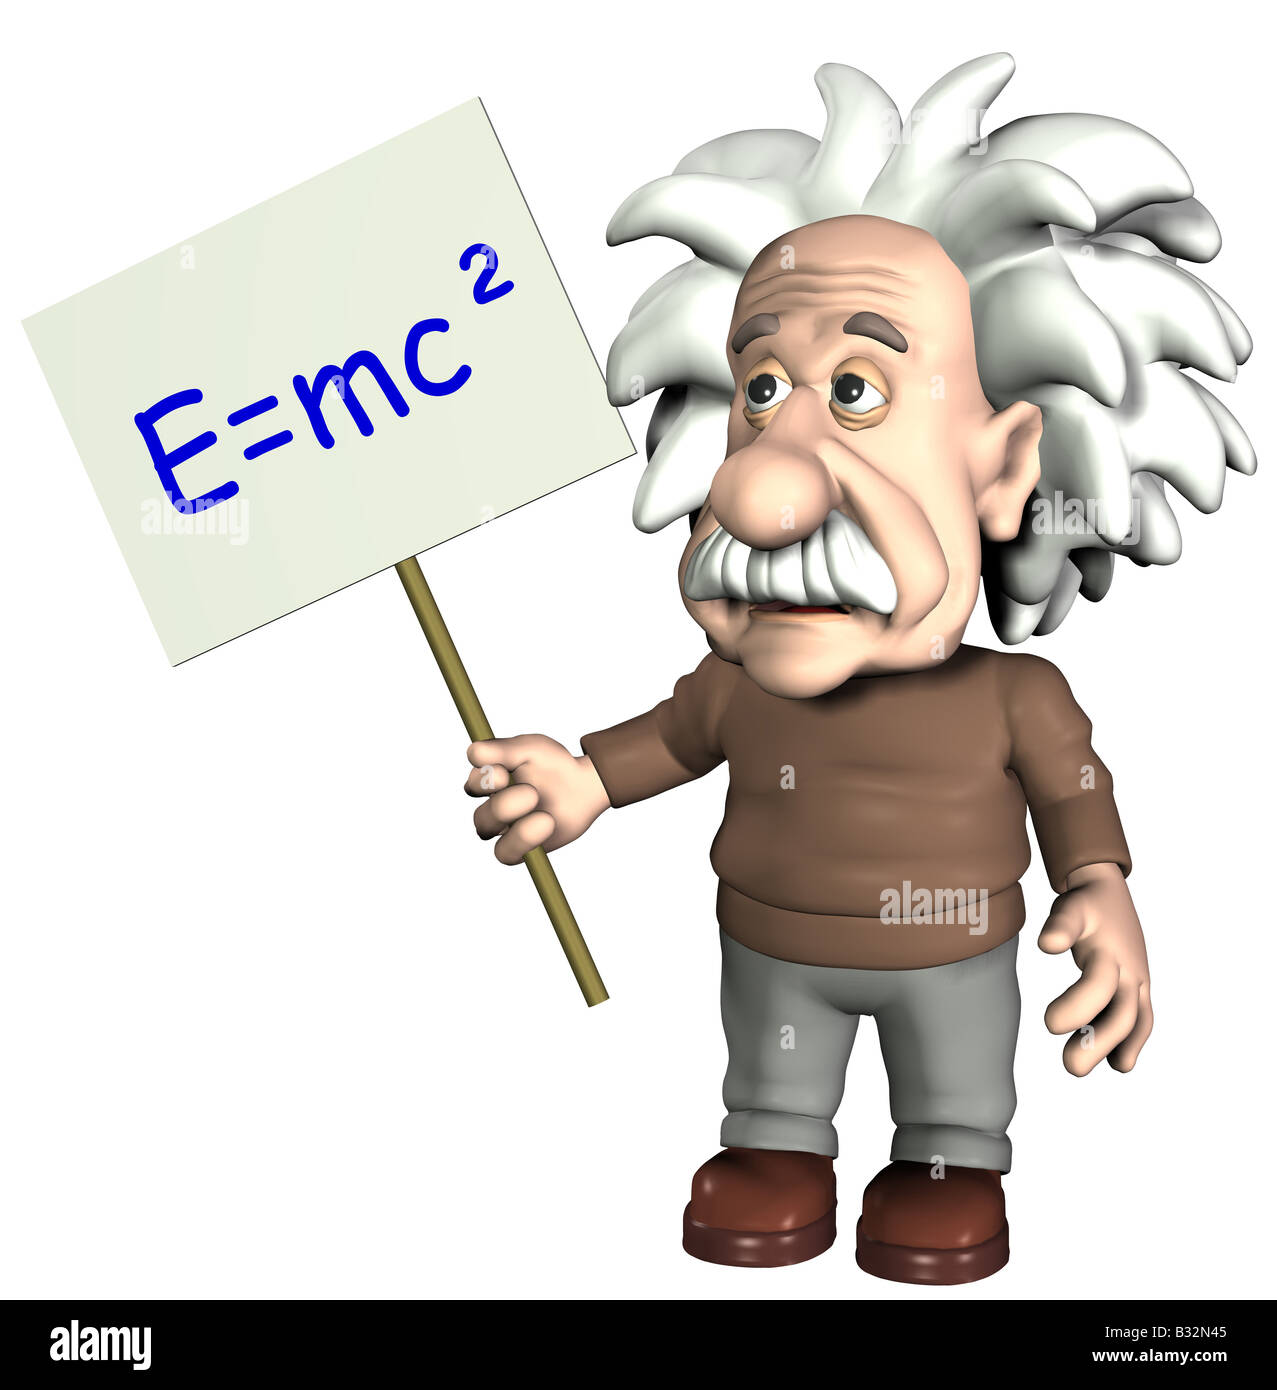 Albert Einstein with sign Stock Photo